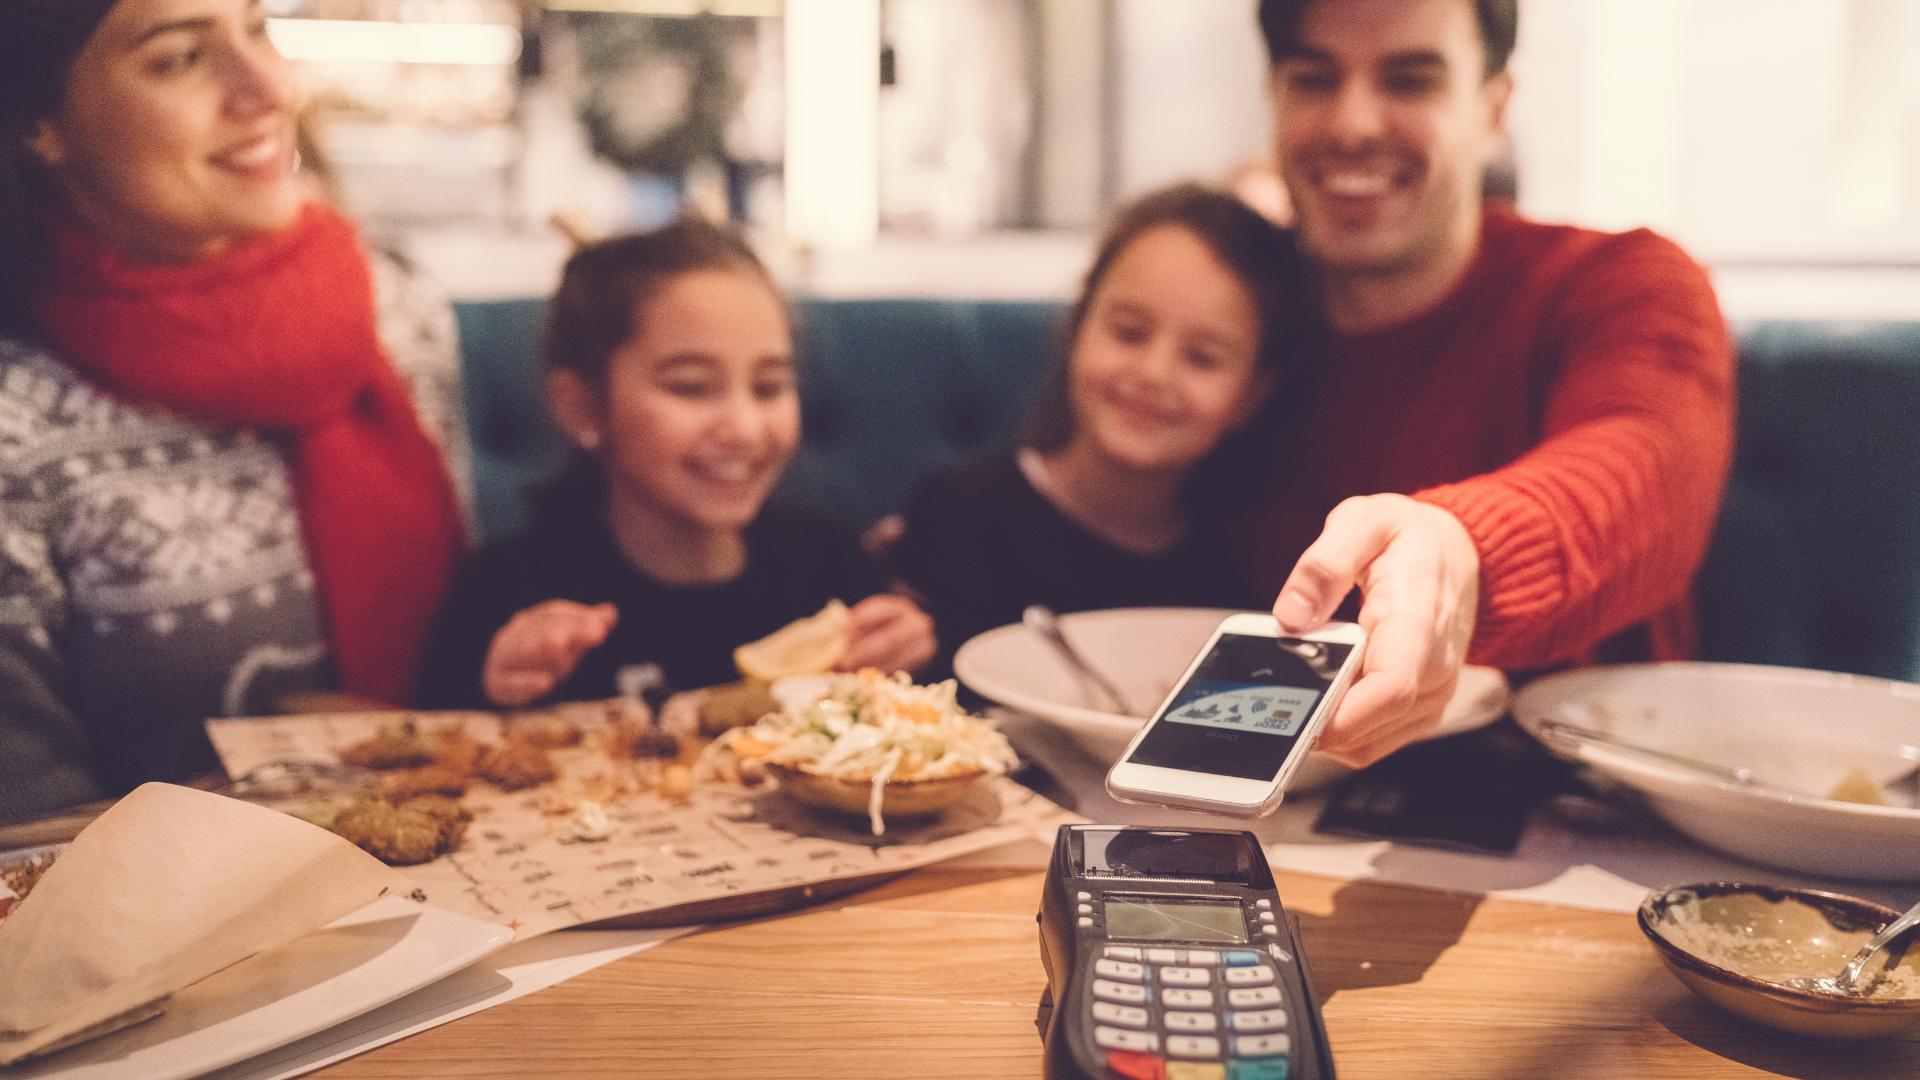 Familie bezahlt nach dem Essen in einem Restaurant an einem POS